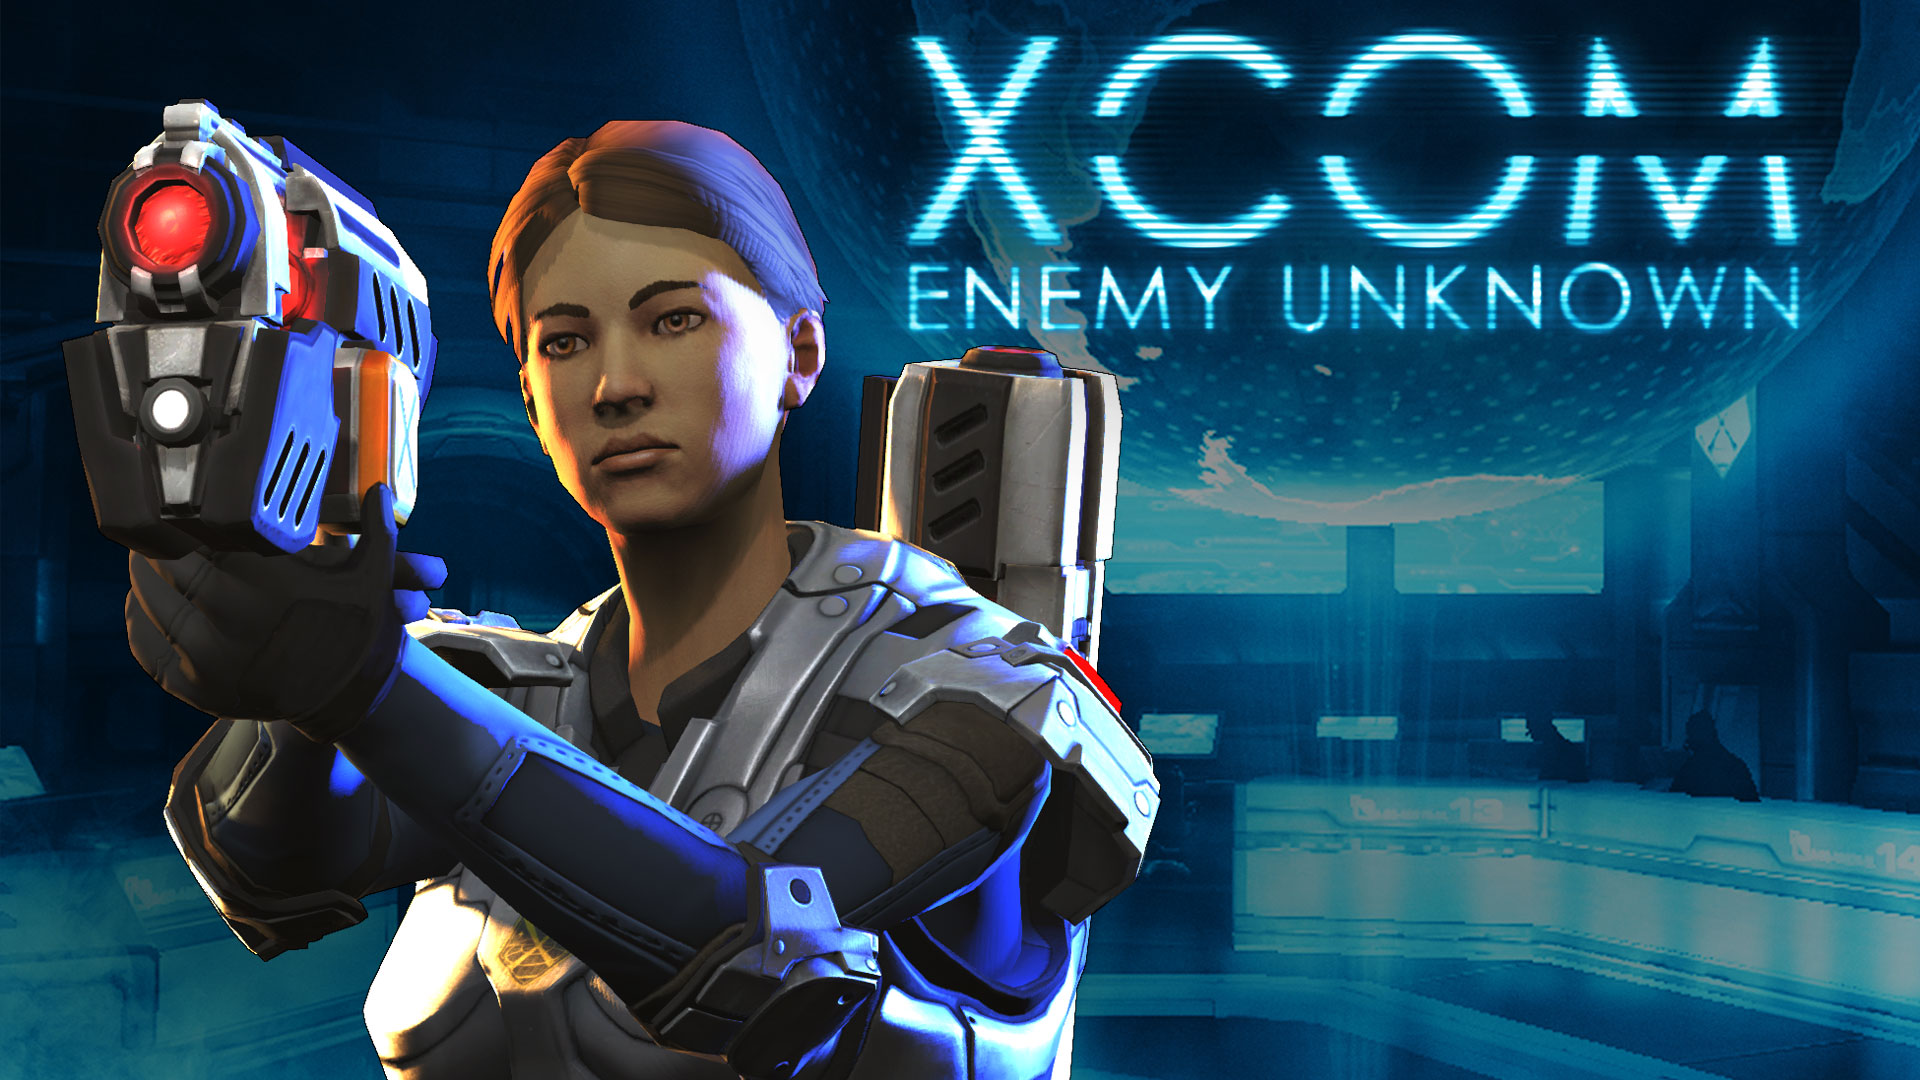 Toxabe com игра. XCOM: Enemy Unknown. XCOM 2 Enemy Unknown. XCOM Enemy Unknown 2012. XCOM 1 энеми анкноун.